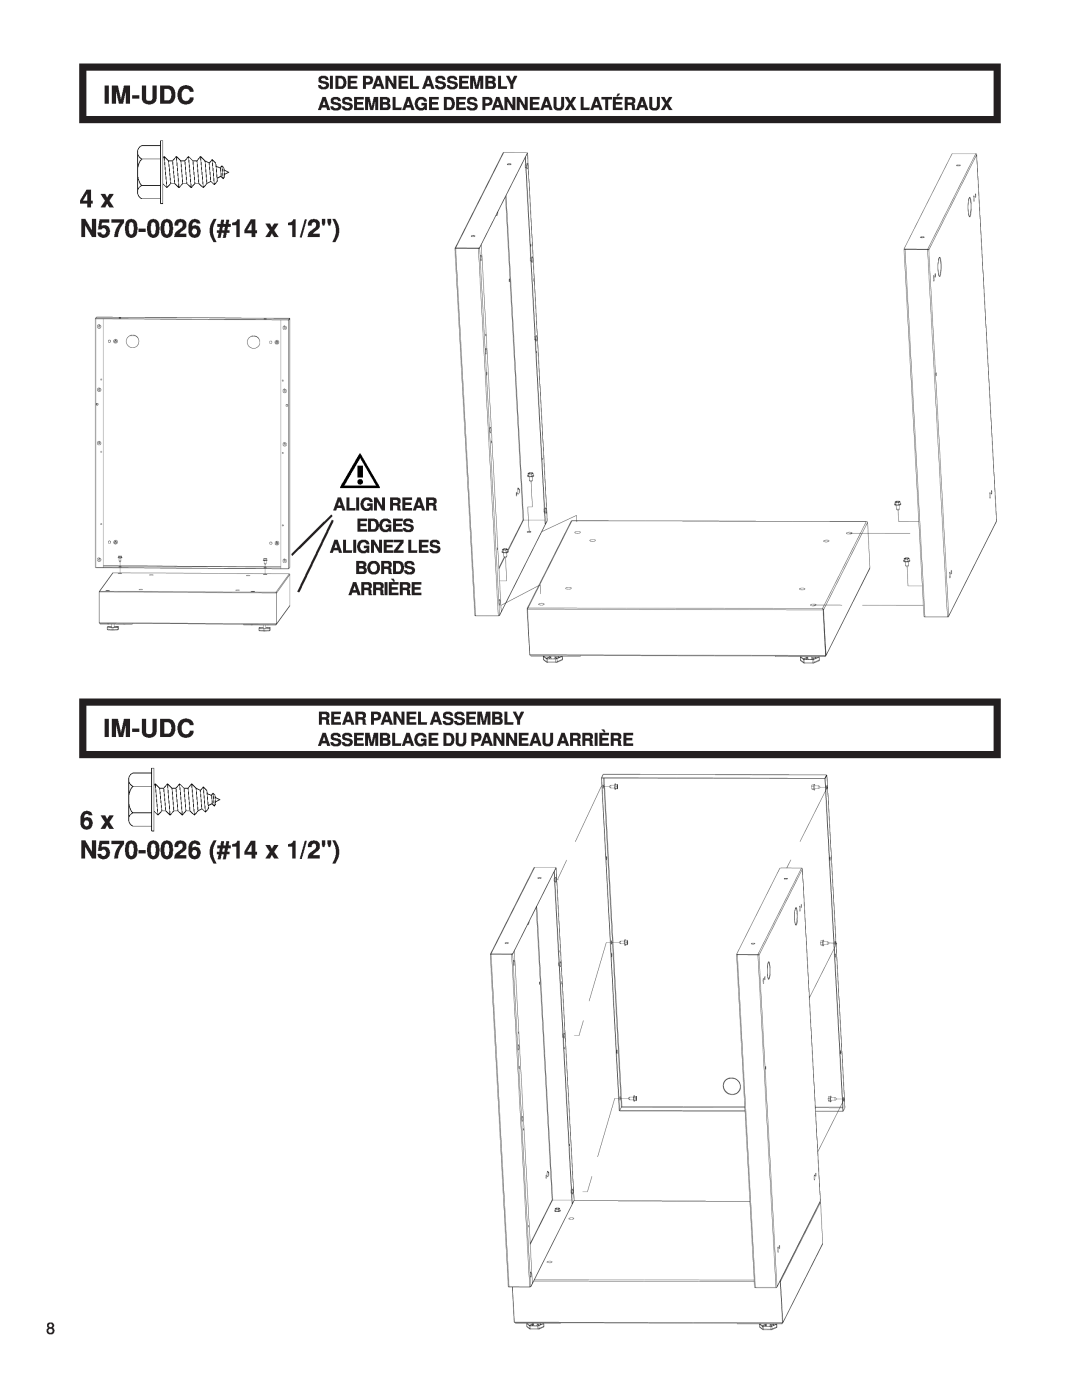 Napoleon Grills 204830-OS, 2032-OS Im-Udc, x N570-0026 #14 x 1/2, Side Panel Assembly Assemblage Des Panneaux Latéraux 